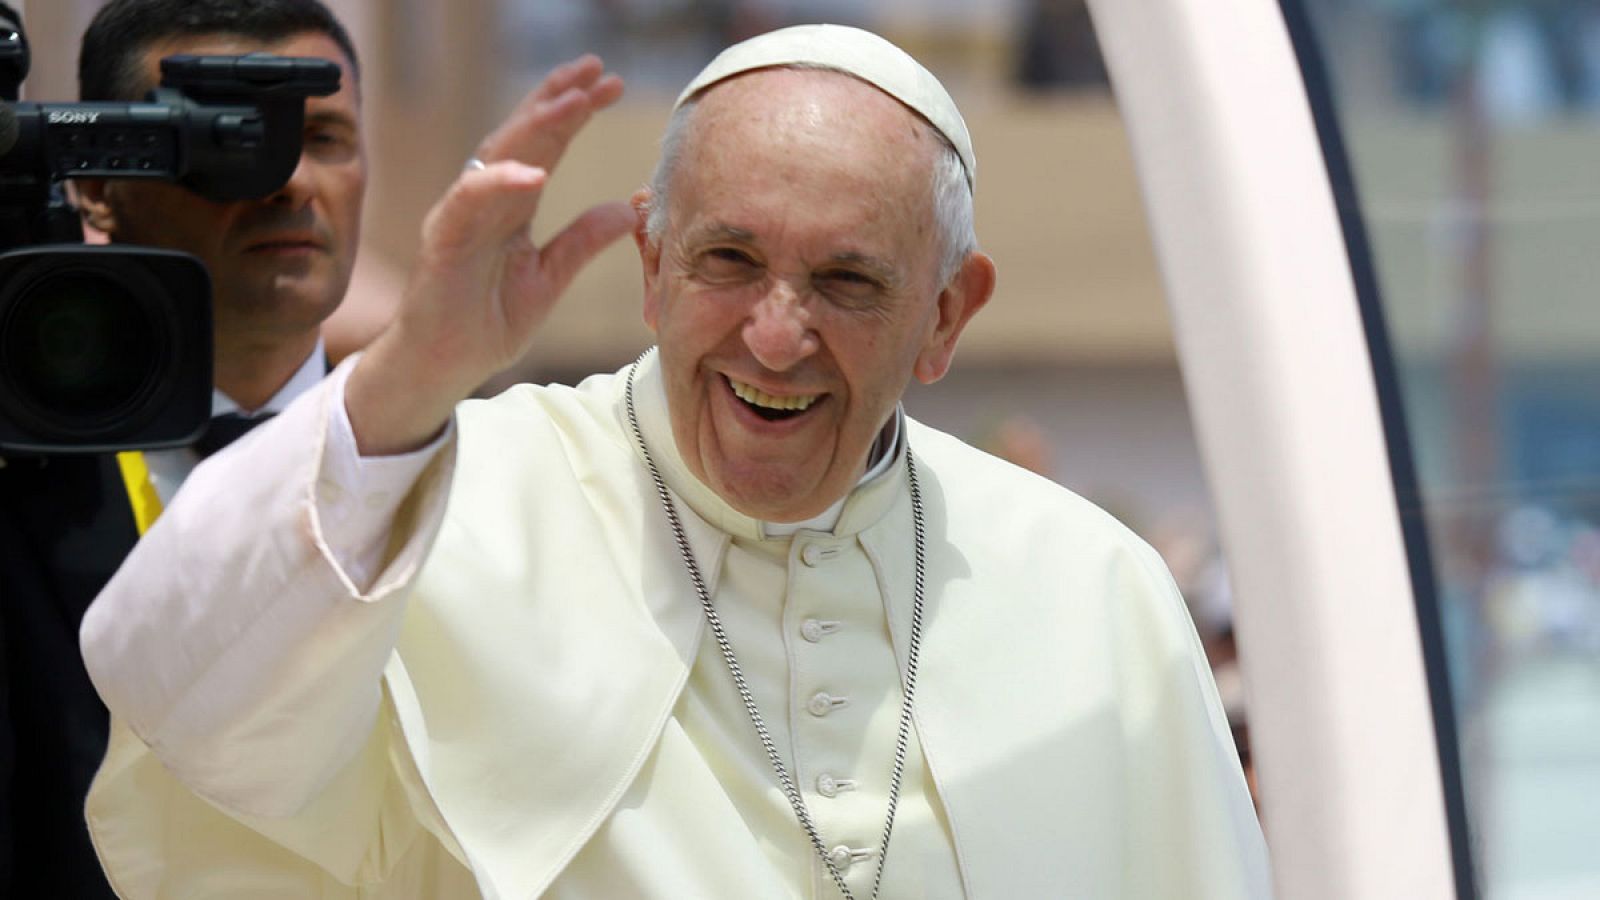 El papa Francisco preside su tradicional audiencia general de los miércoles en la sala Nervi, en el Vaticano, hoy, 12 de diciembre de 2018